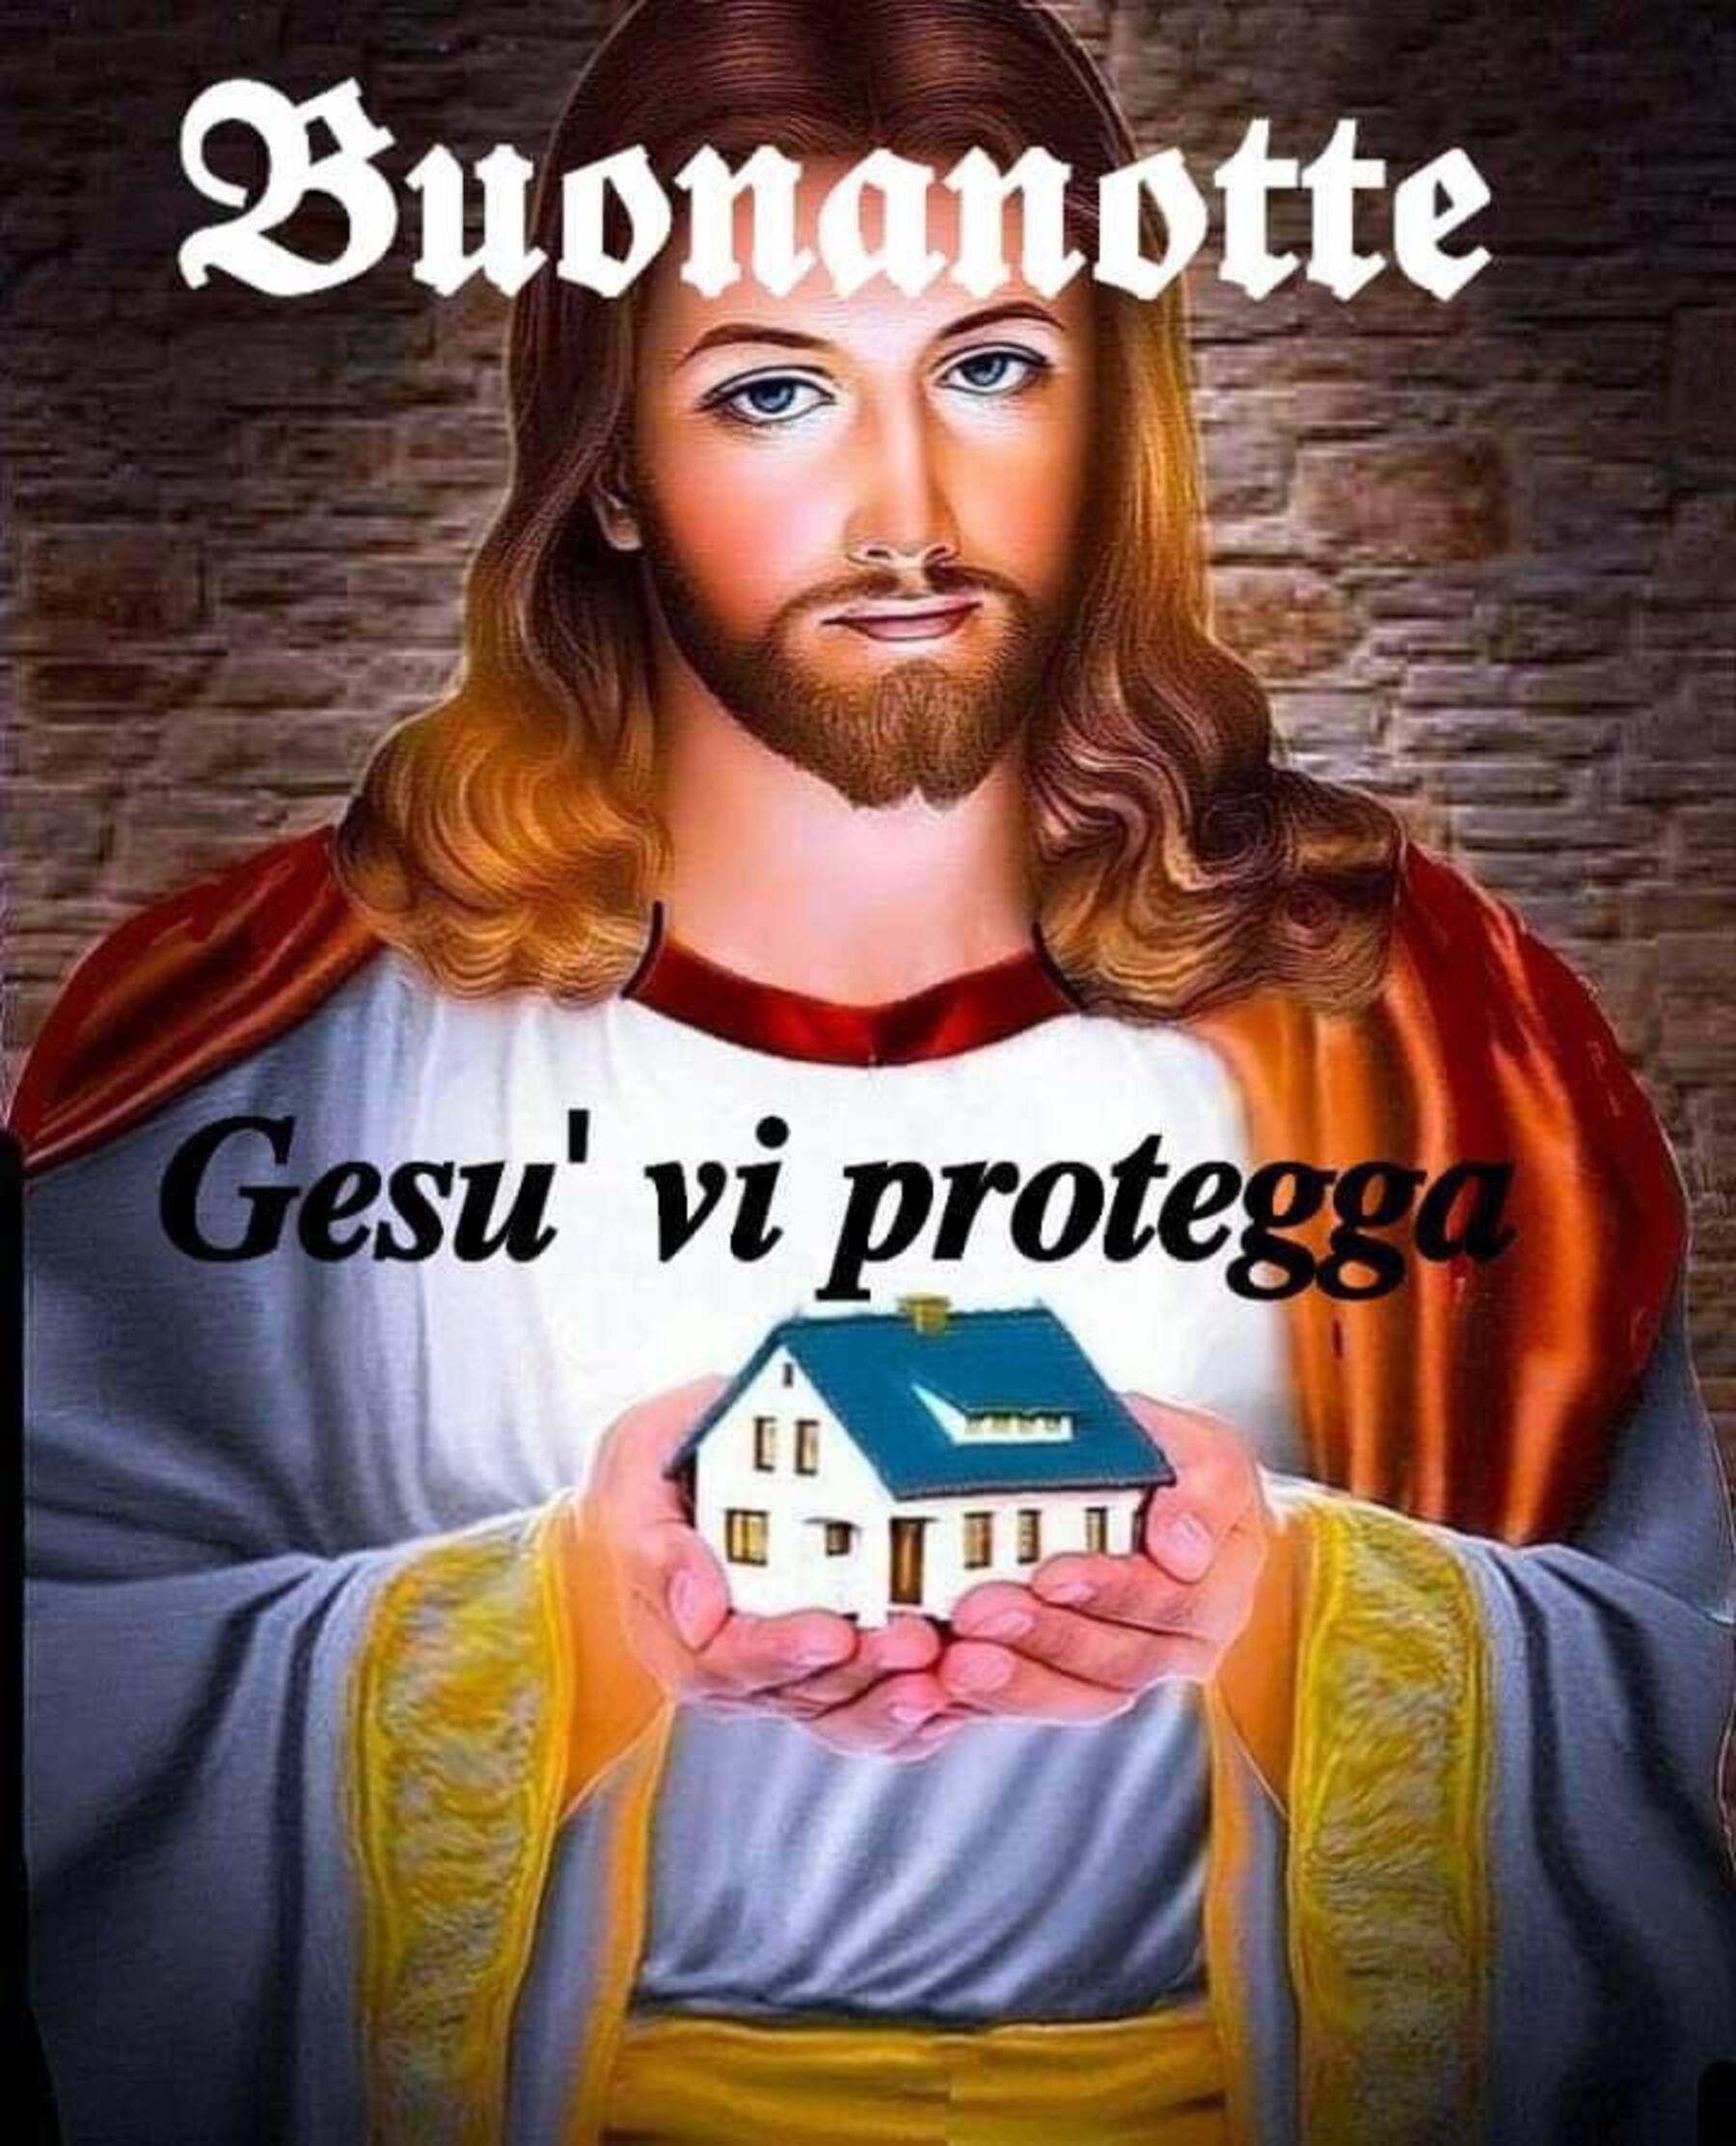 Buonanotte Gesù vi protegga